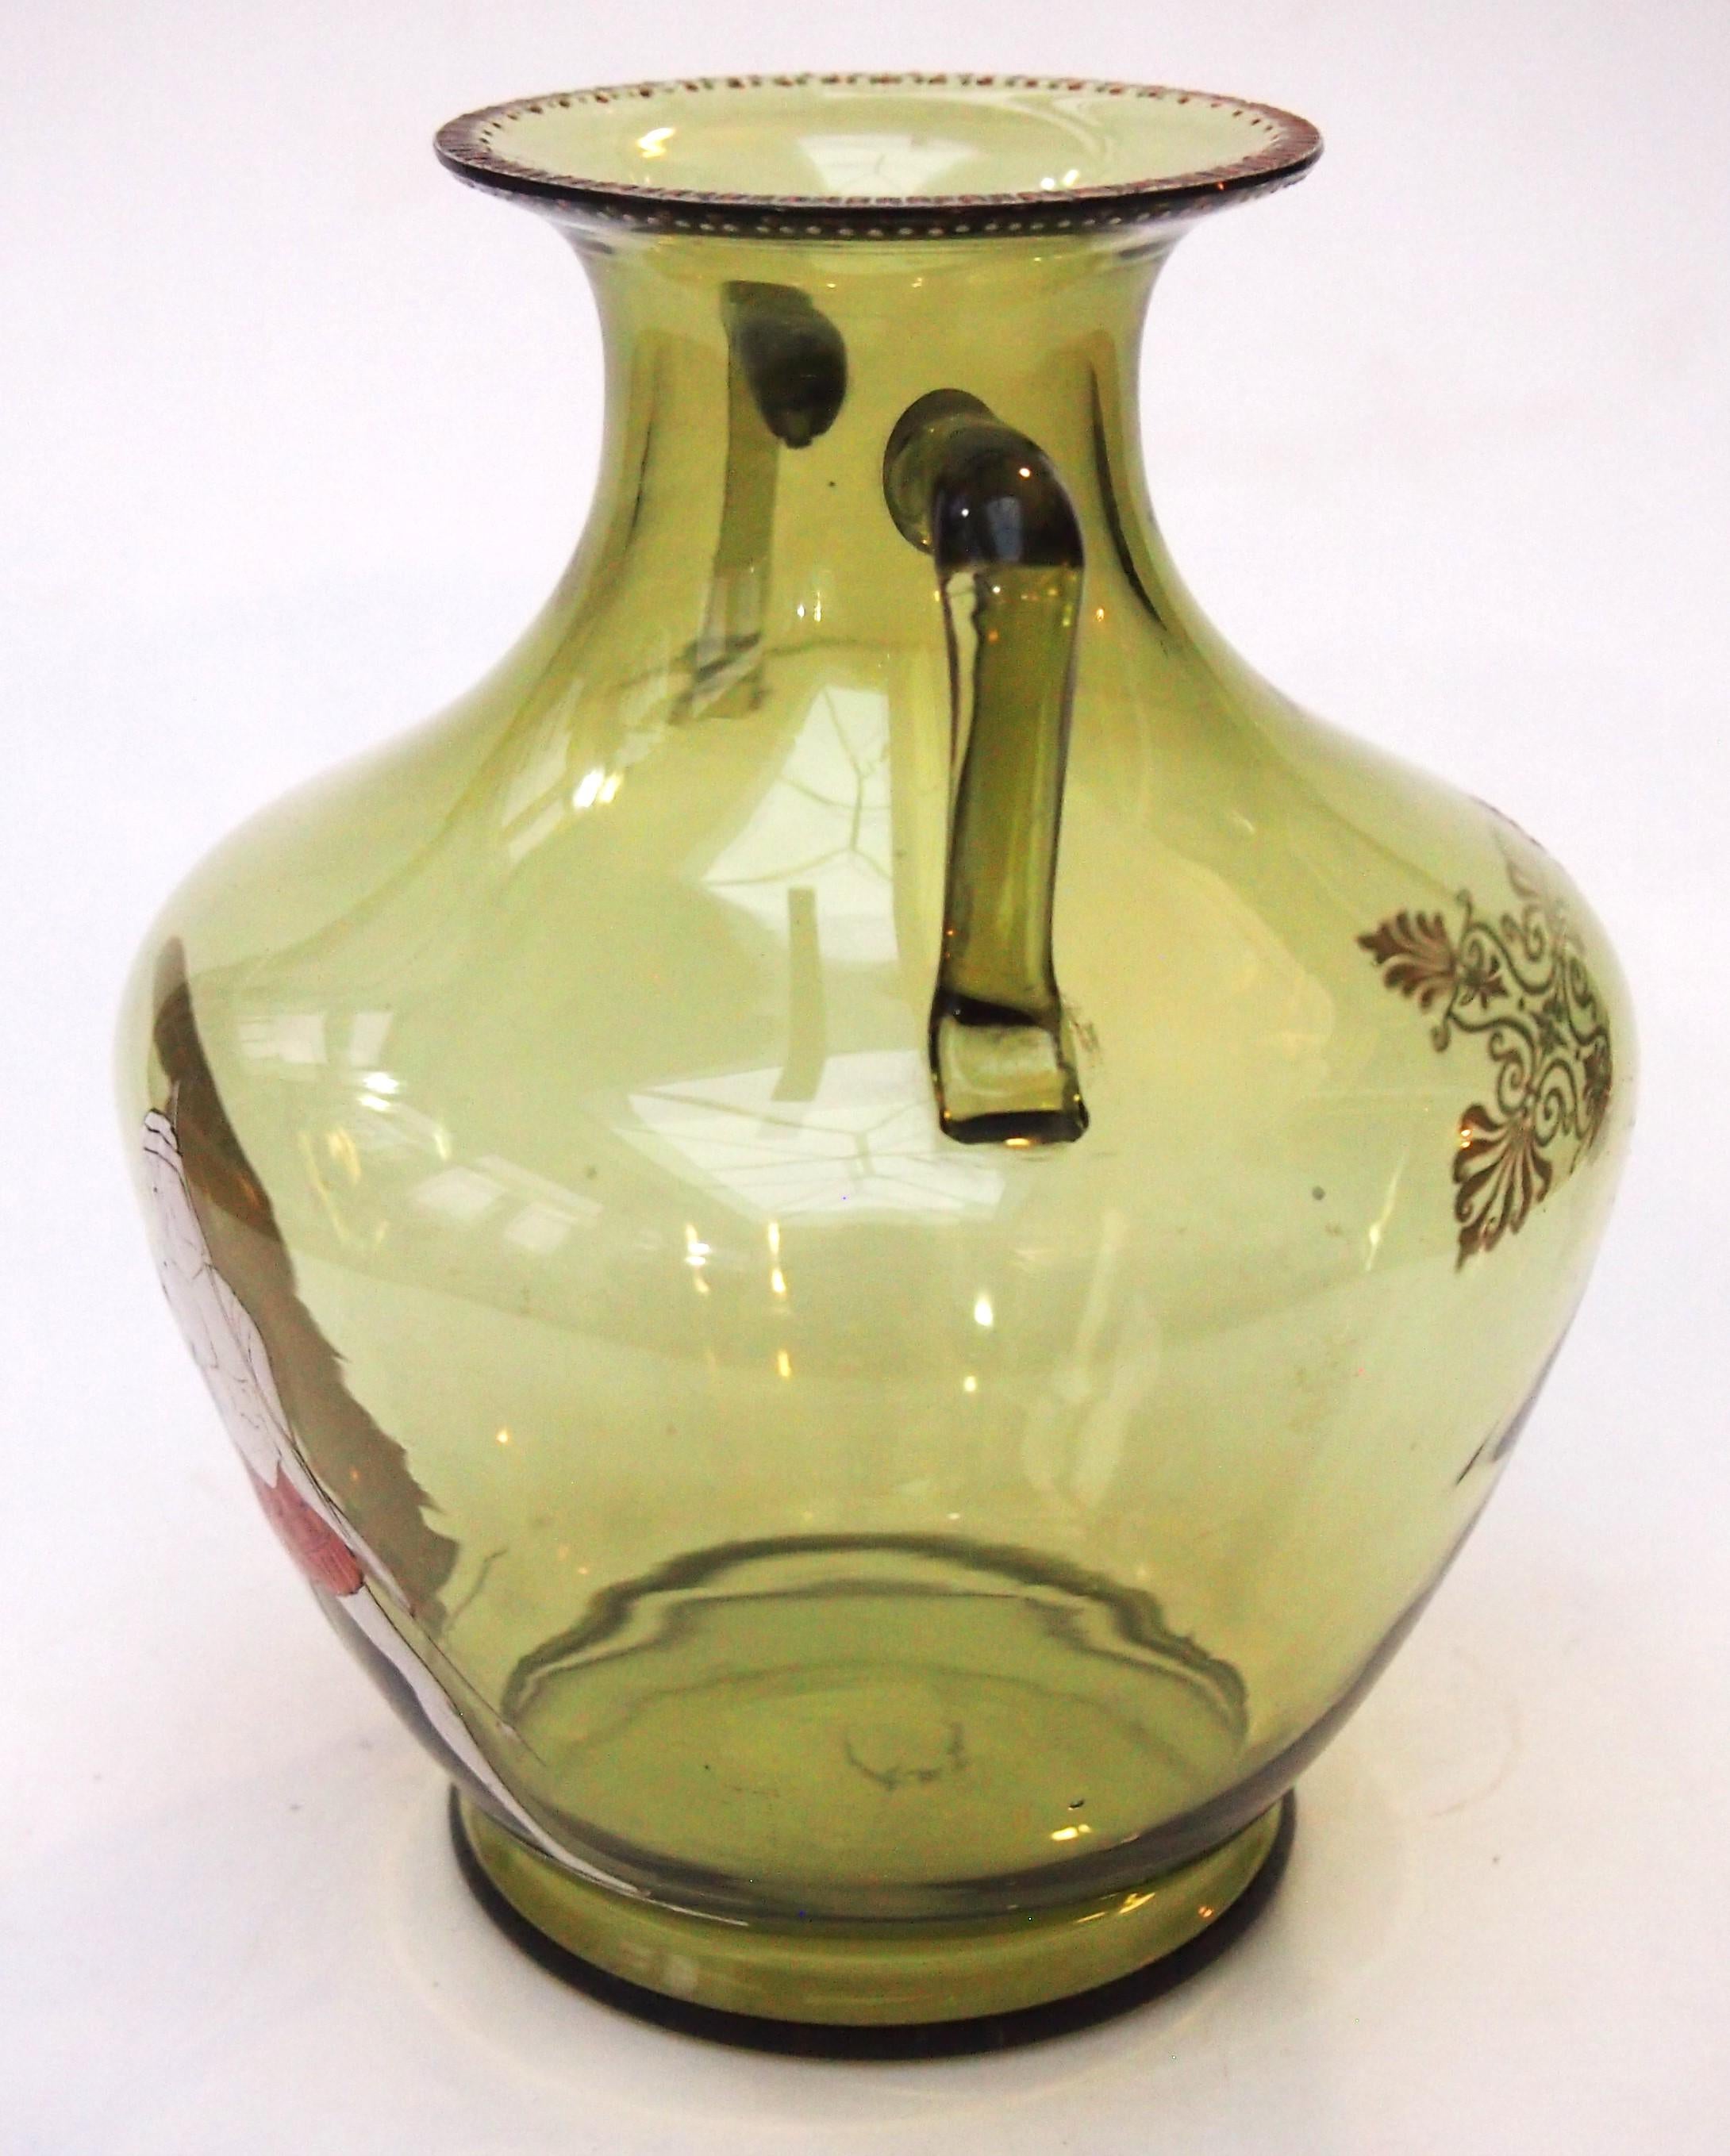 Ungewöhnliches Beispiel einer olivgrünen, emaillierten Vase mit zwei Henkeln von Harrach, die zwei klassische Figuren darstellt: einen bärtigen Krieger und eine ältere Frau, beide in Weiß auf Orange. Die Vase ist zusätzlich rund um den Deckel und